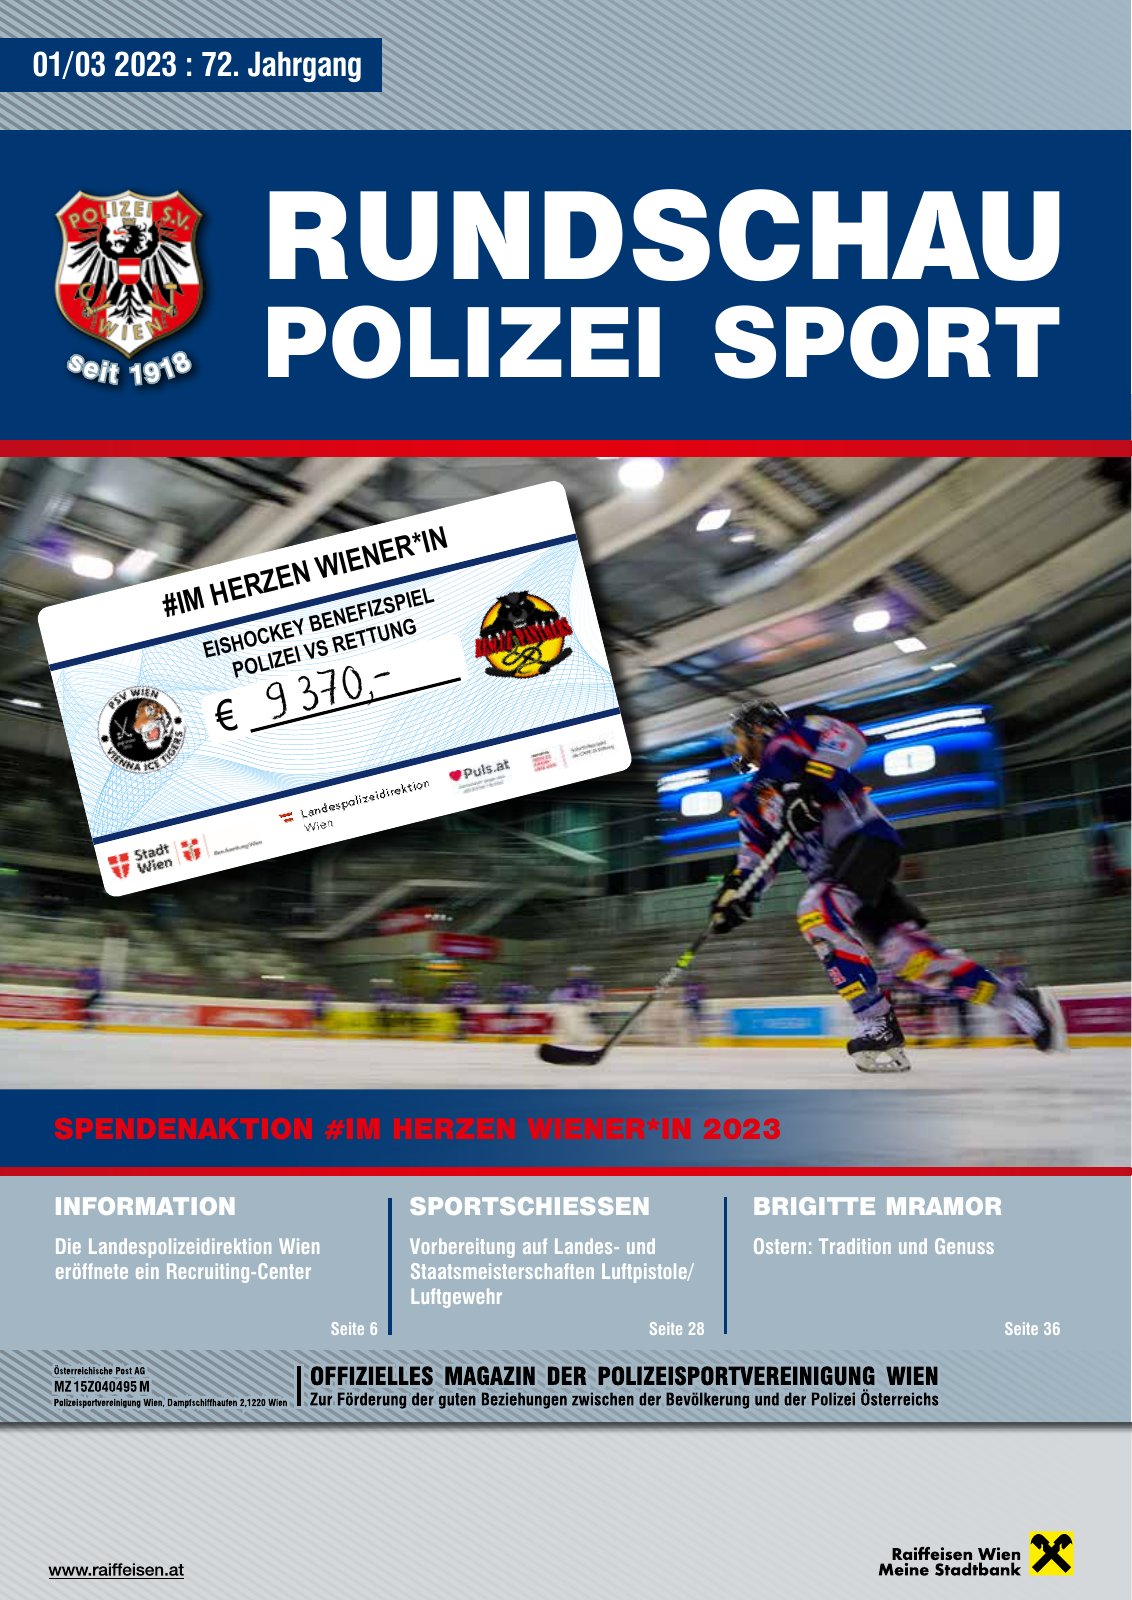 Vorschau Rundschau Polizei Sport 01-03/2023 Seite 1